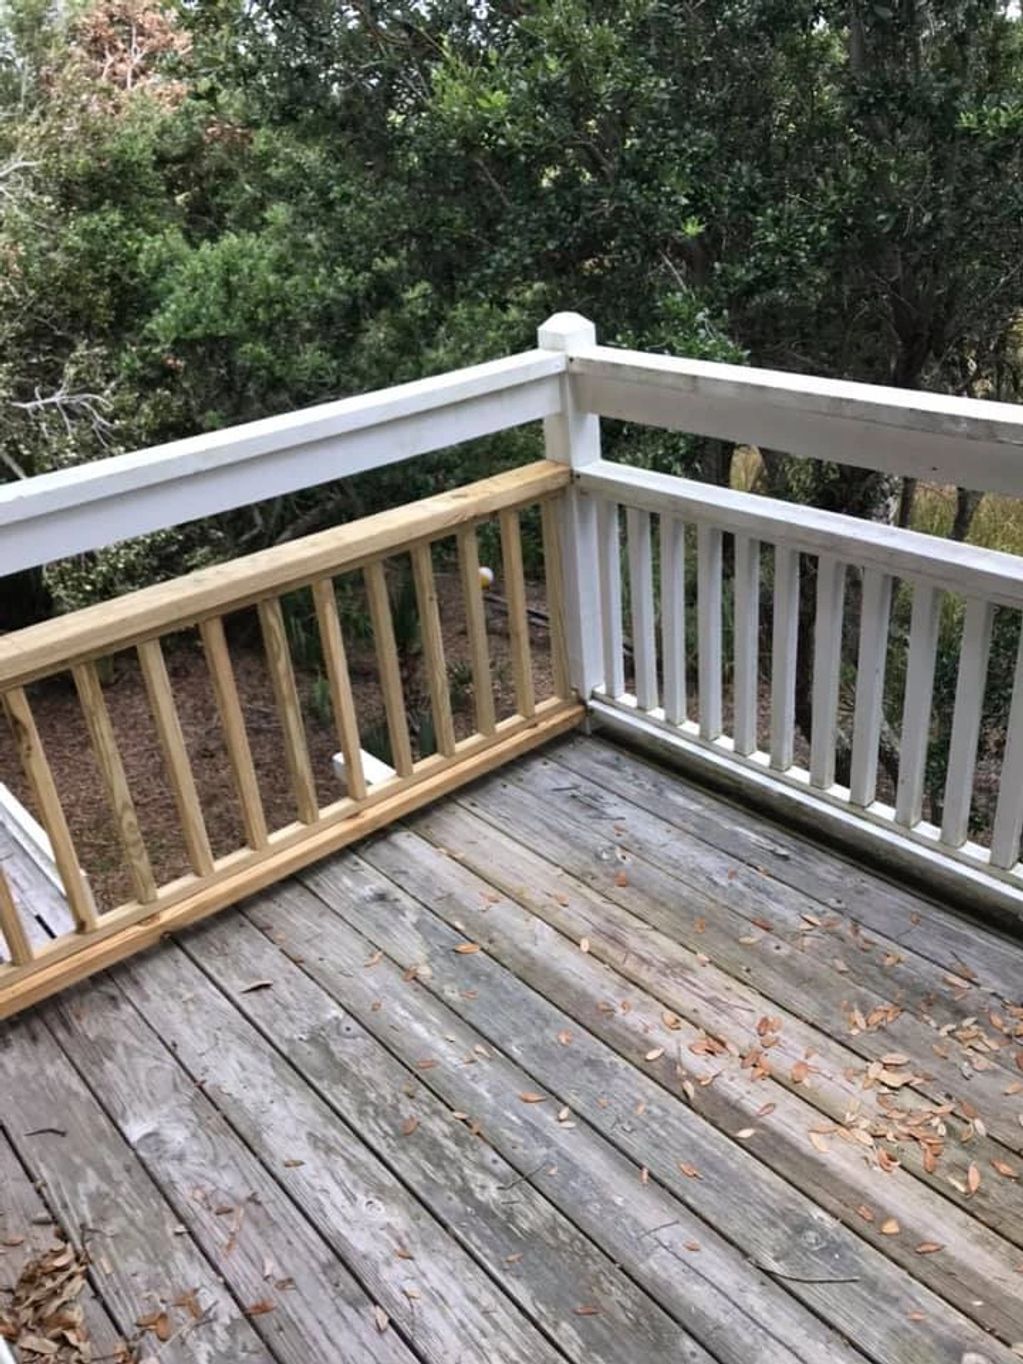 Match existing railing